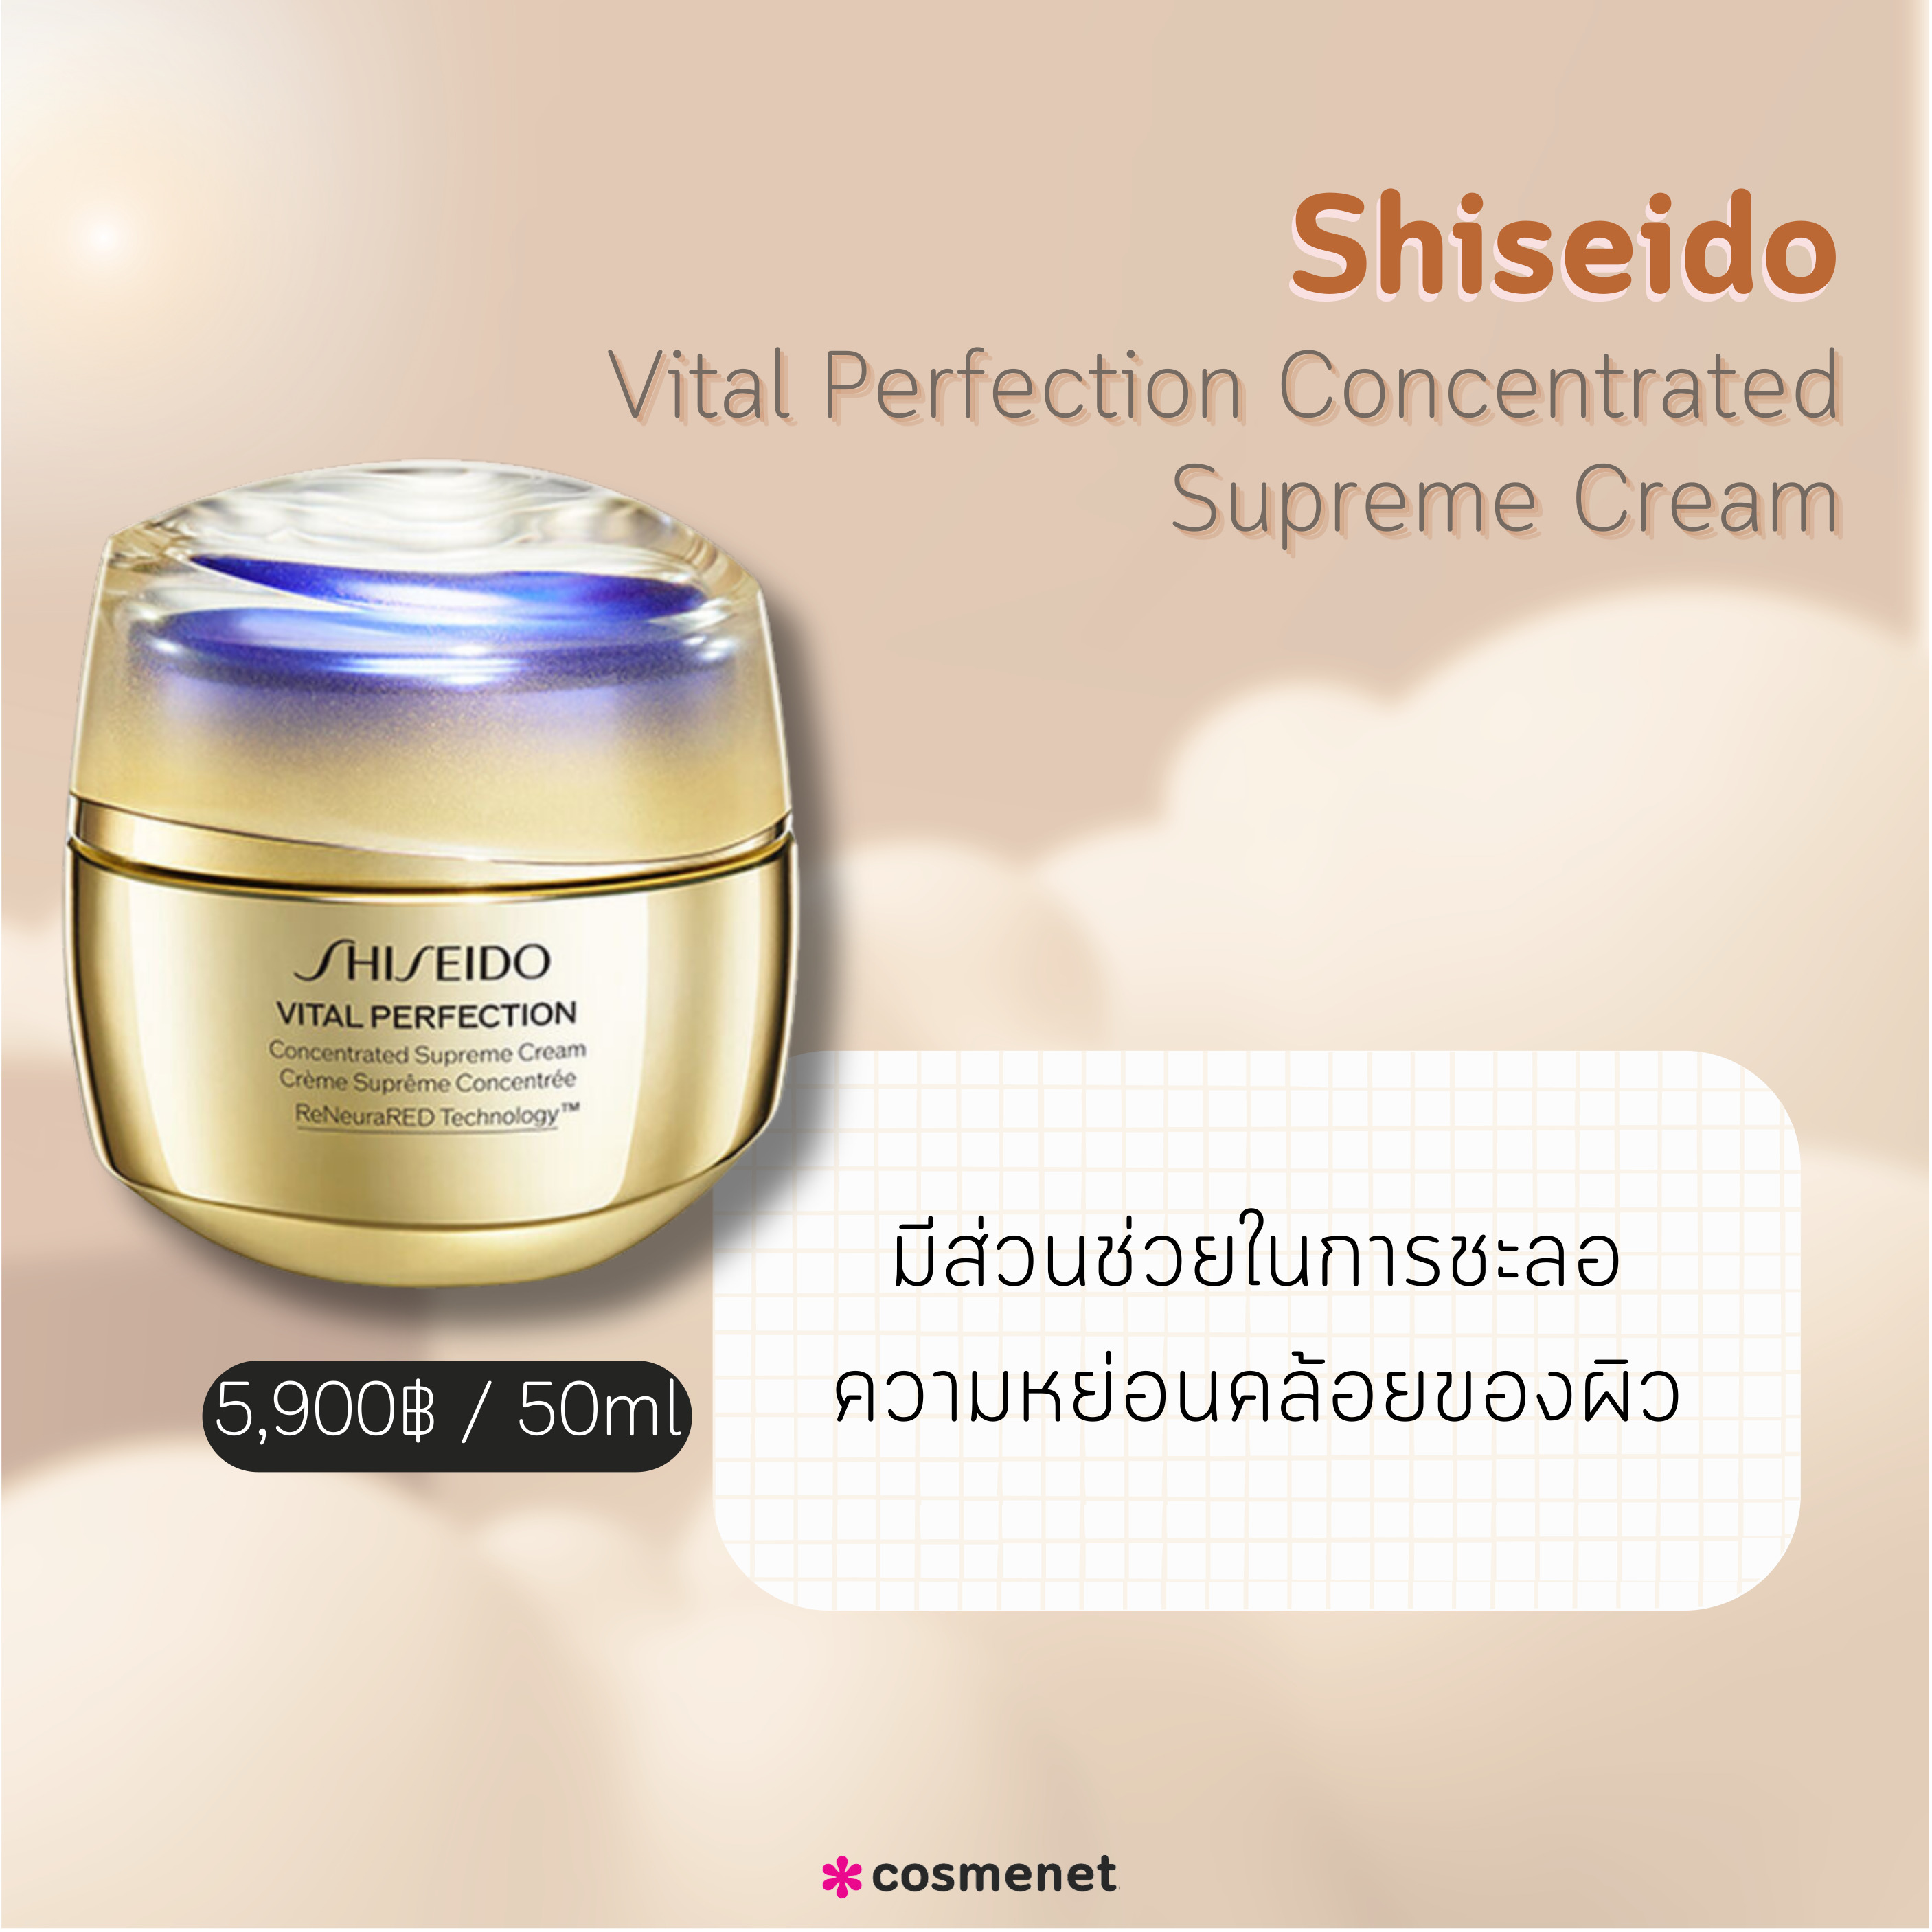 สกินแคร์เคาน์เตอร์แบรนด์ Shiseido